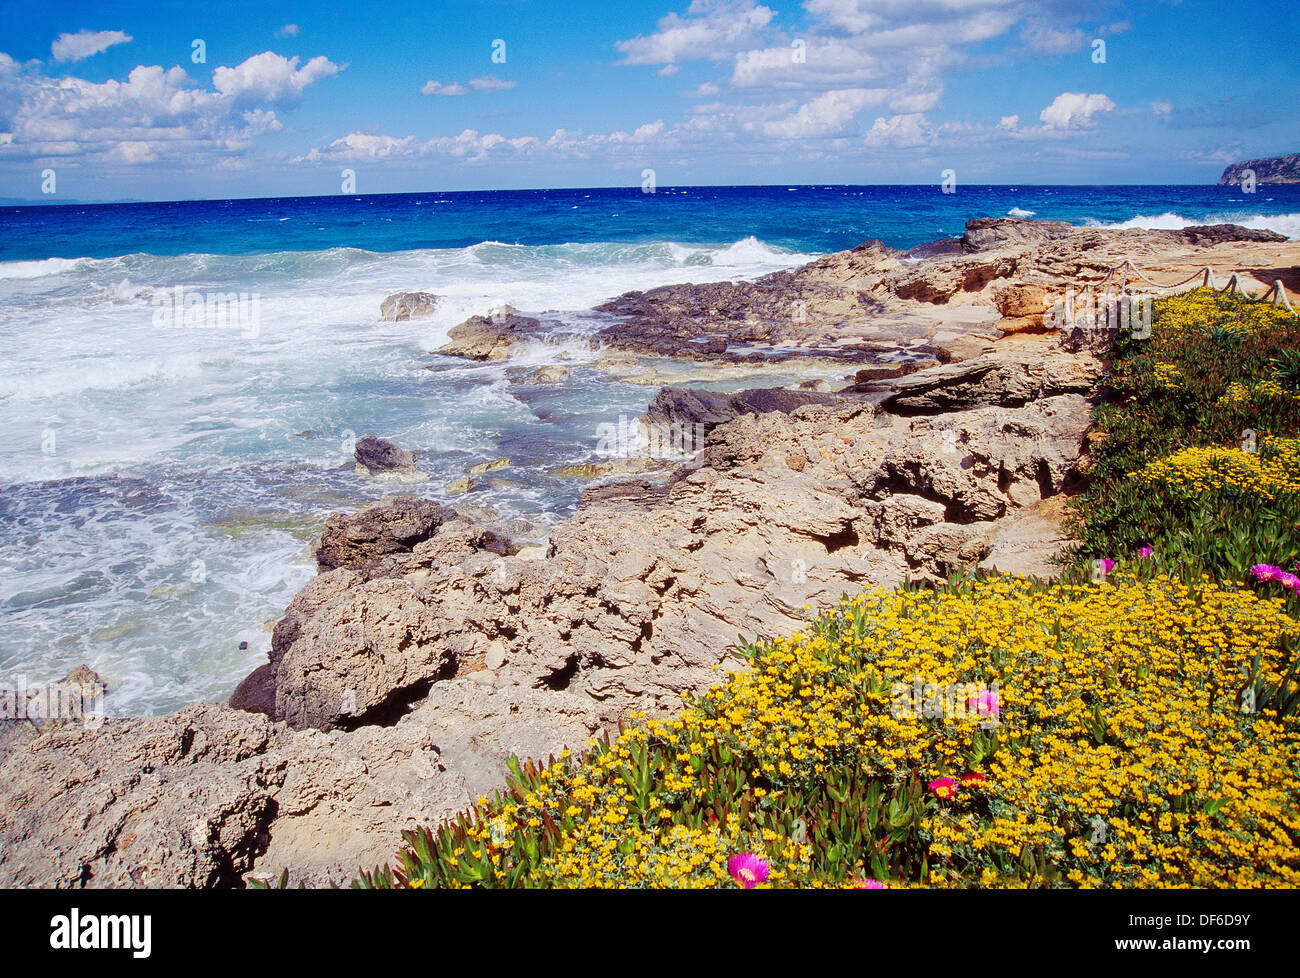 Es Calo côte. L'île de Formentera, Iles Baléares, Espagne. Banque D'Images